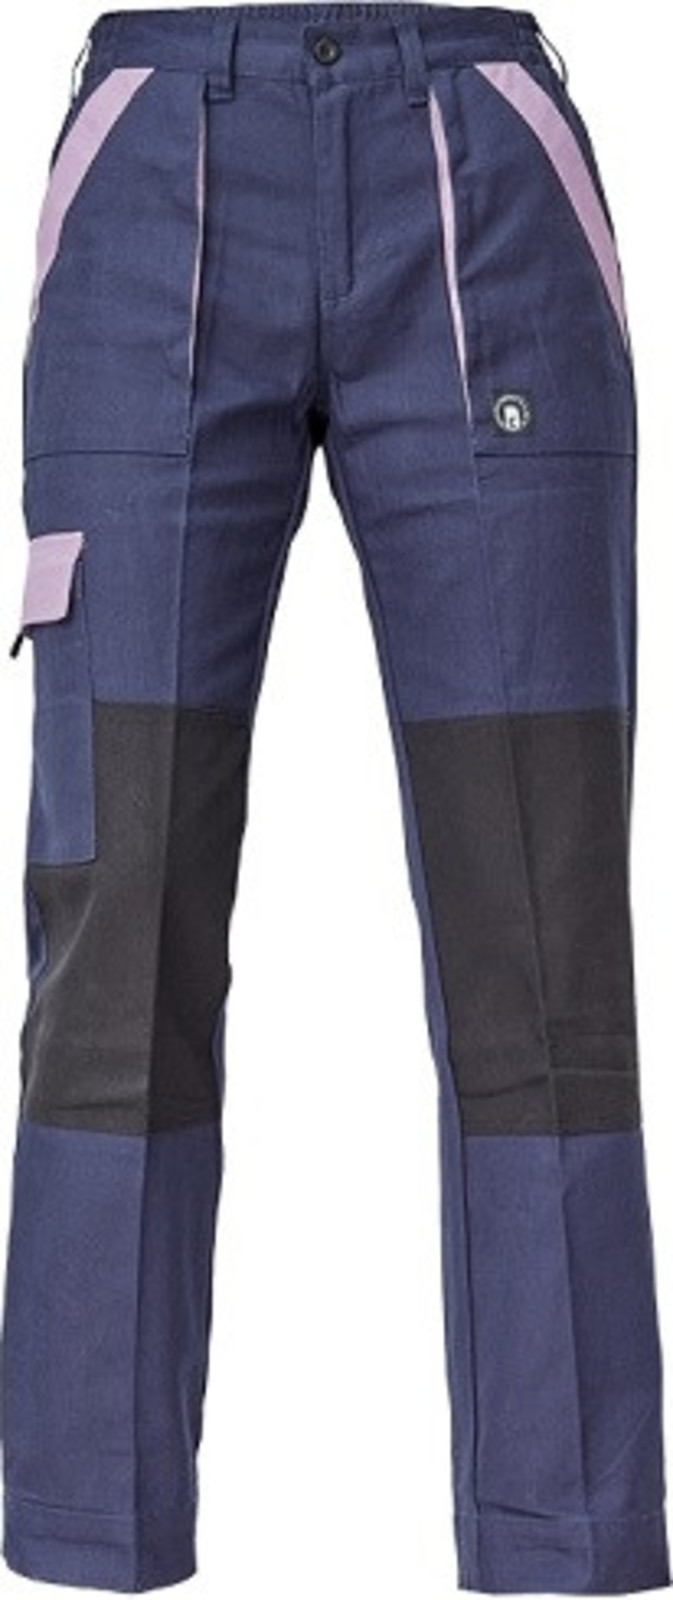 Dámske bavlnené montérky Cerva Max Neo Lady - veľkosť: 48, farba: navy/fialová